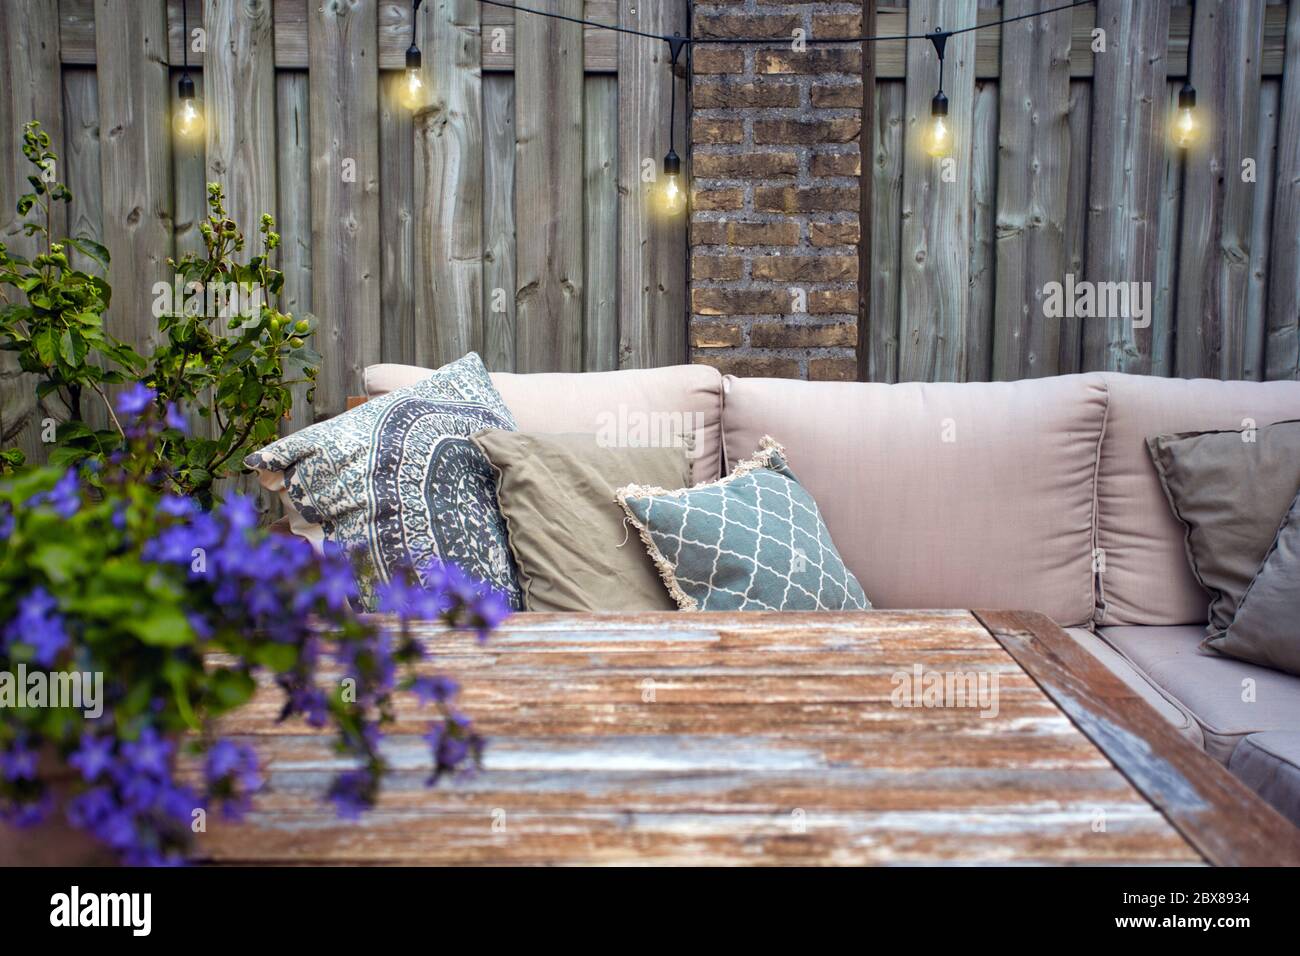 Stilvolle Gartenmöbel, Sofa mit Kissen und Lampen, Glühbirnen hängen,  gemütliche moderne Ecke auf der Terrasse Stockfotografie - Alamy